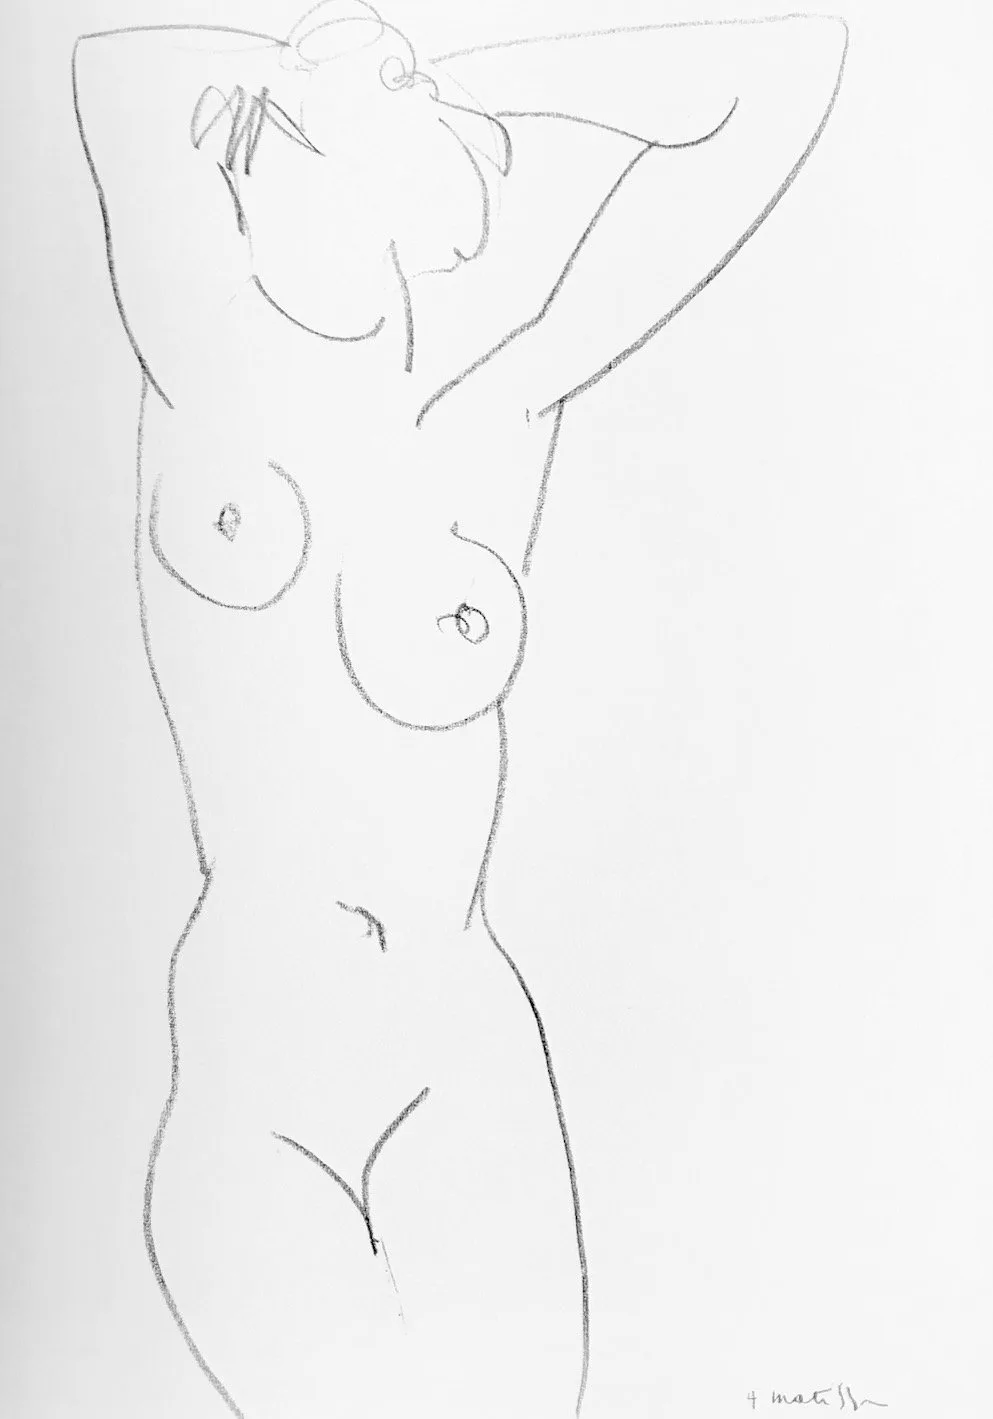 Matisse "DM0246" DLM 1952